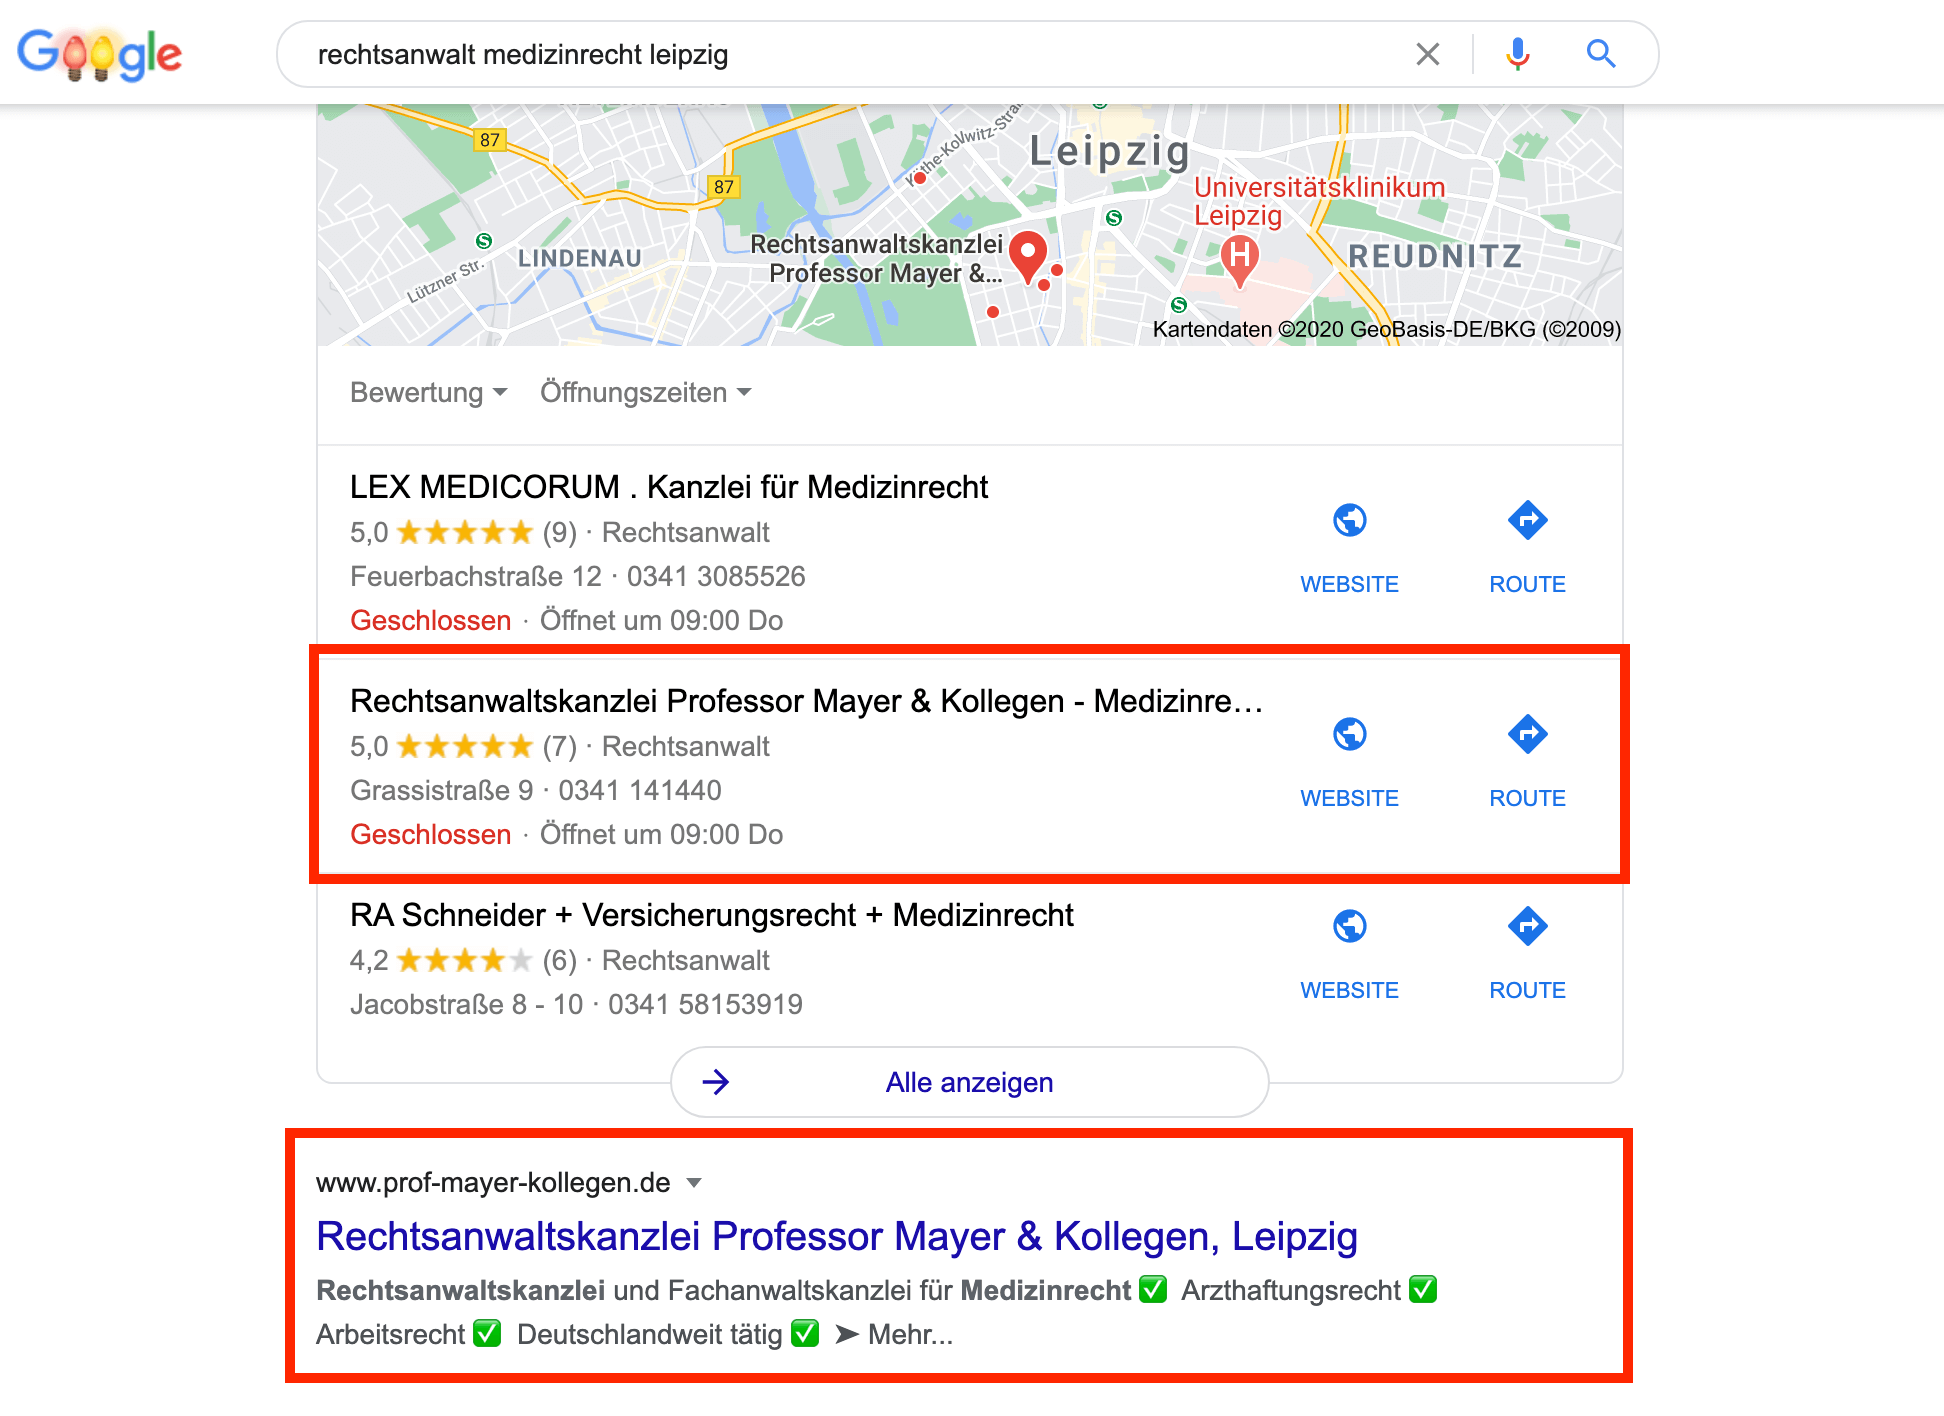 Google-Suchergebnis Rechtsanwälte Professor Mayer & Kollegen. So sieht optimale regionale Suchmaschinenoptimierung / Lokales Online Marketing aus.